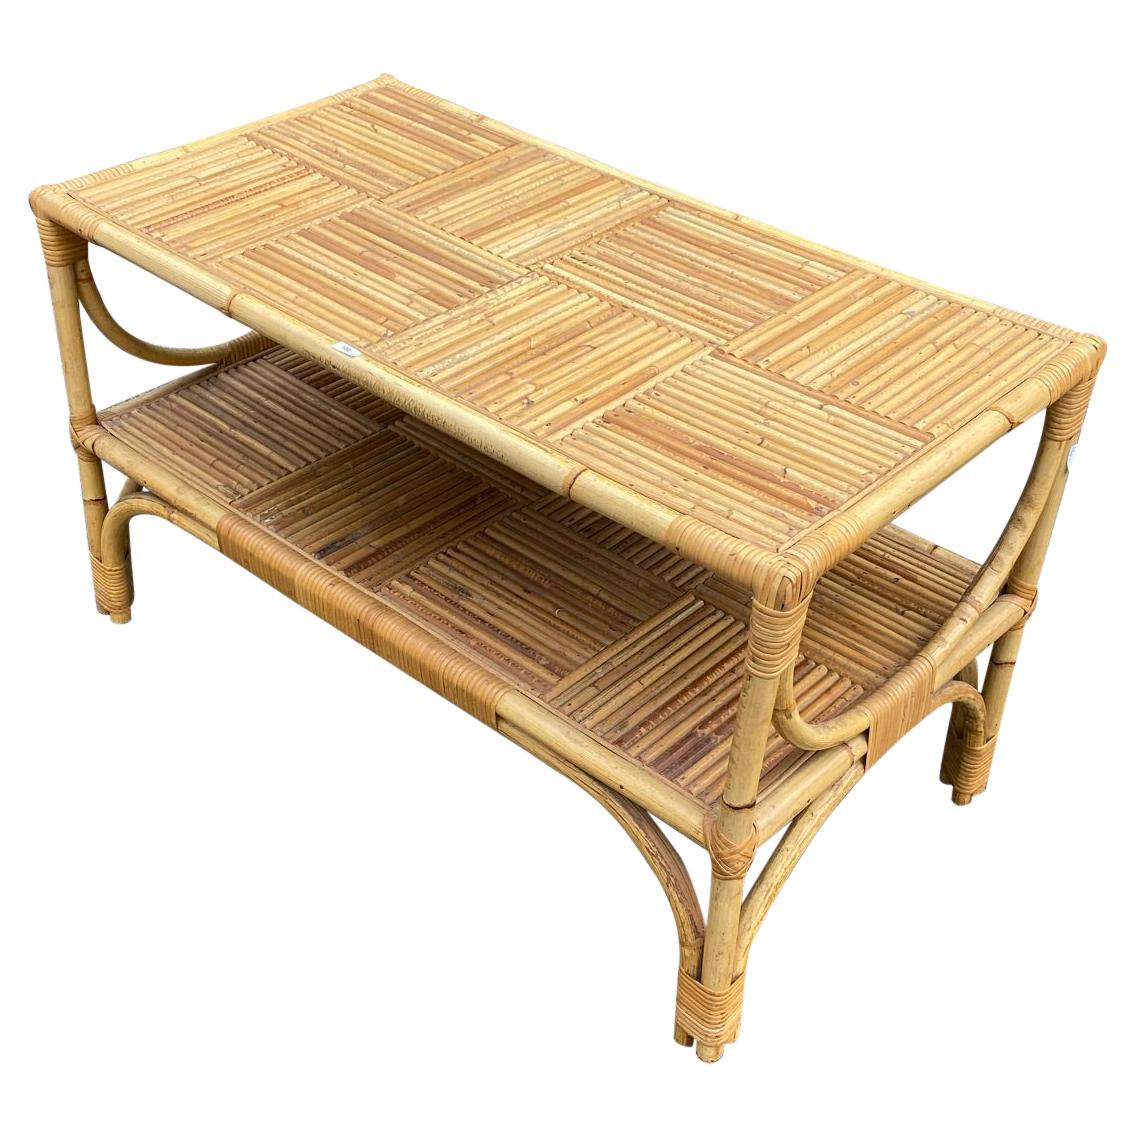 Bamboo table, circa 1950-1960.